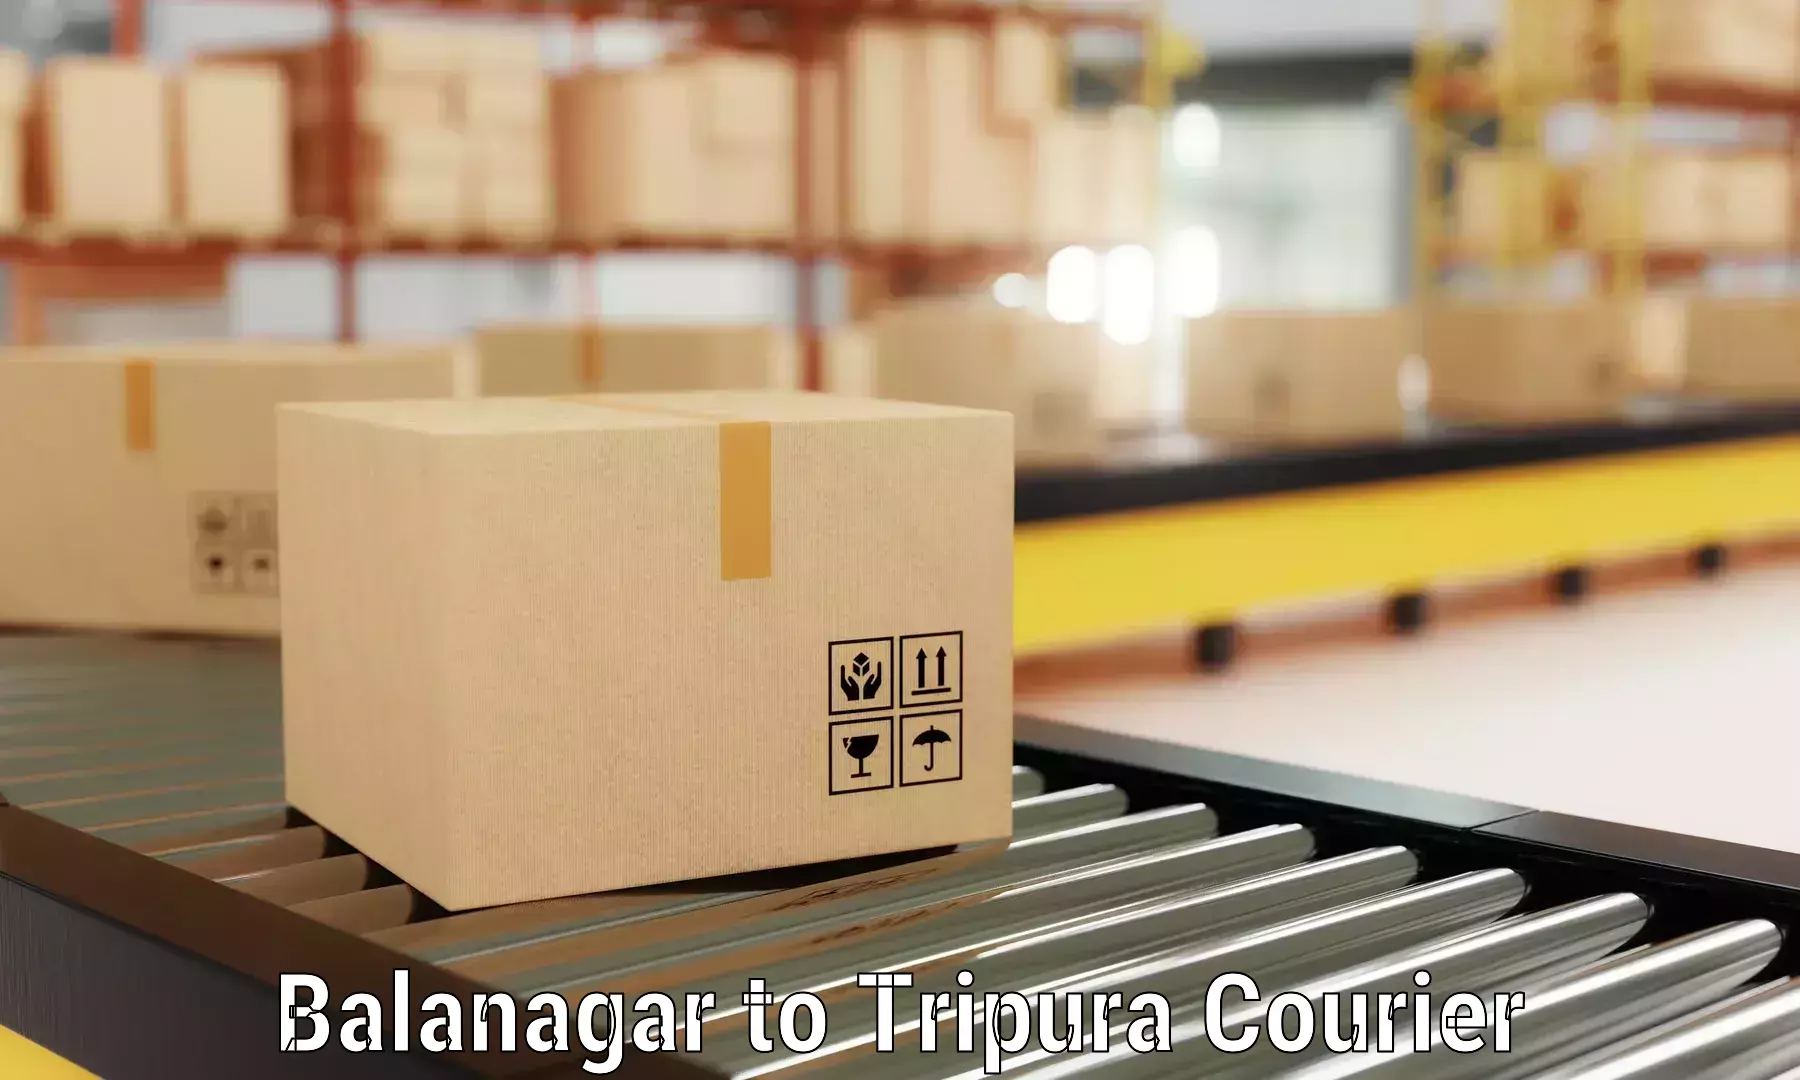 Professional packing services Balanagar to Bishalgarh